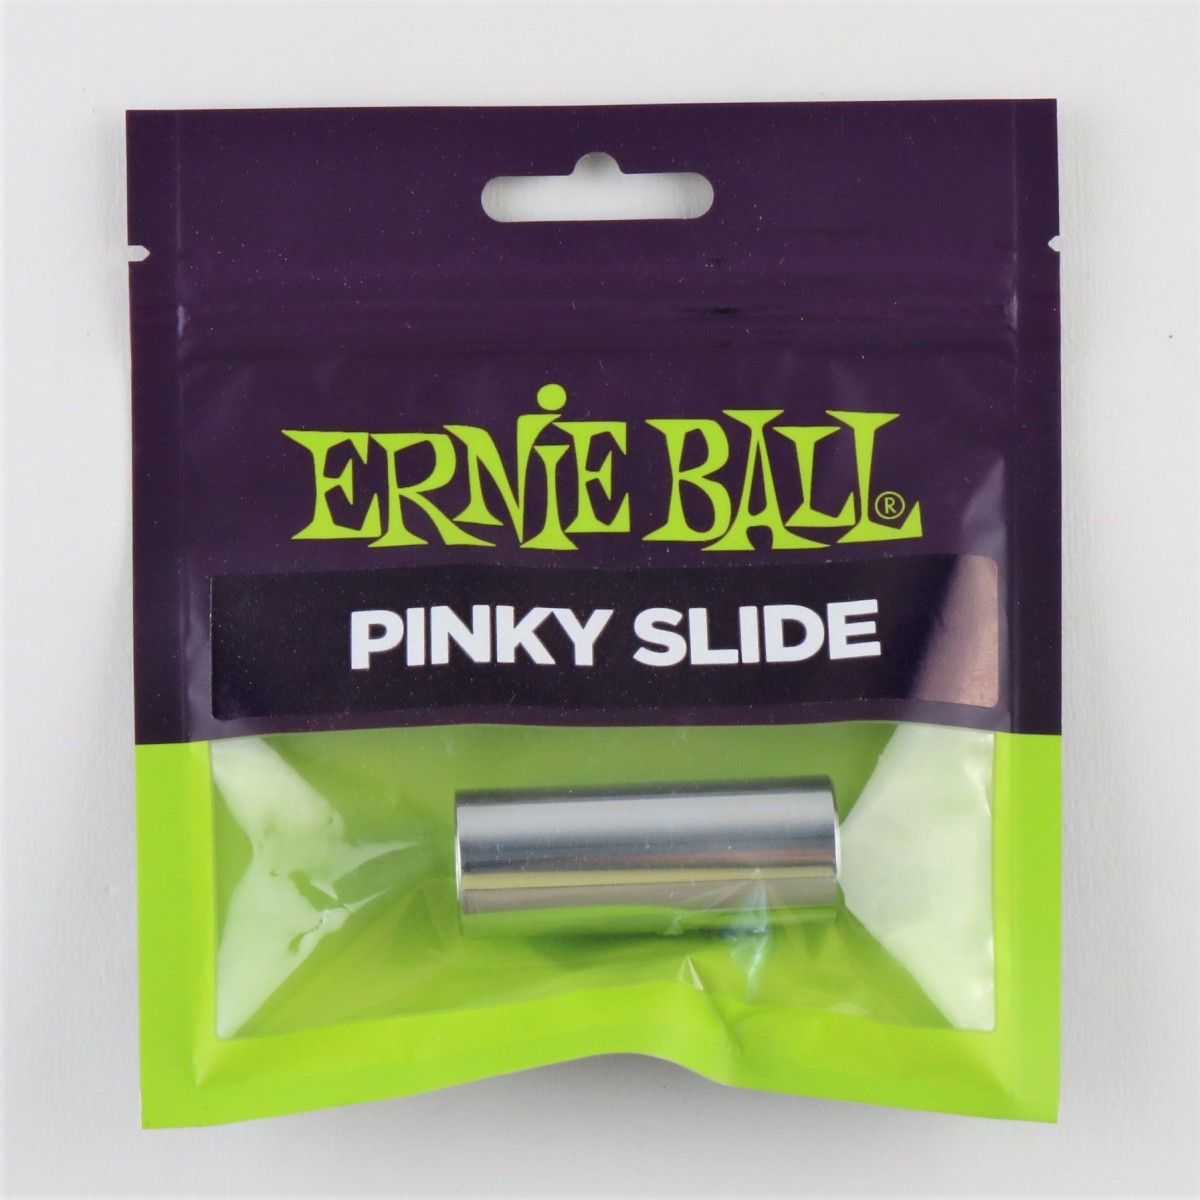 ERNIE BALL PINKY SLIDE